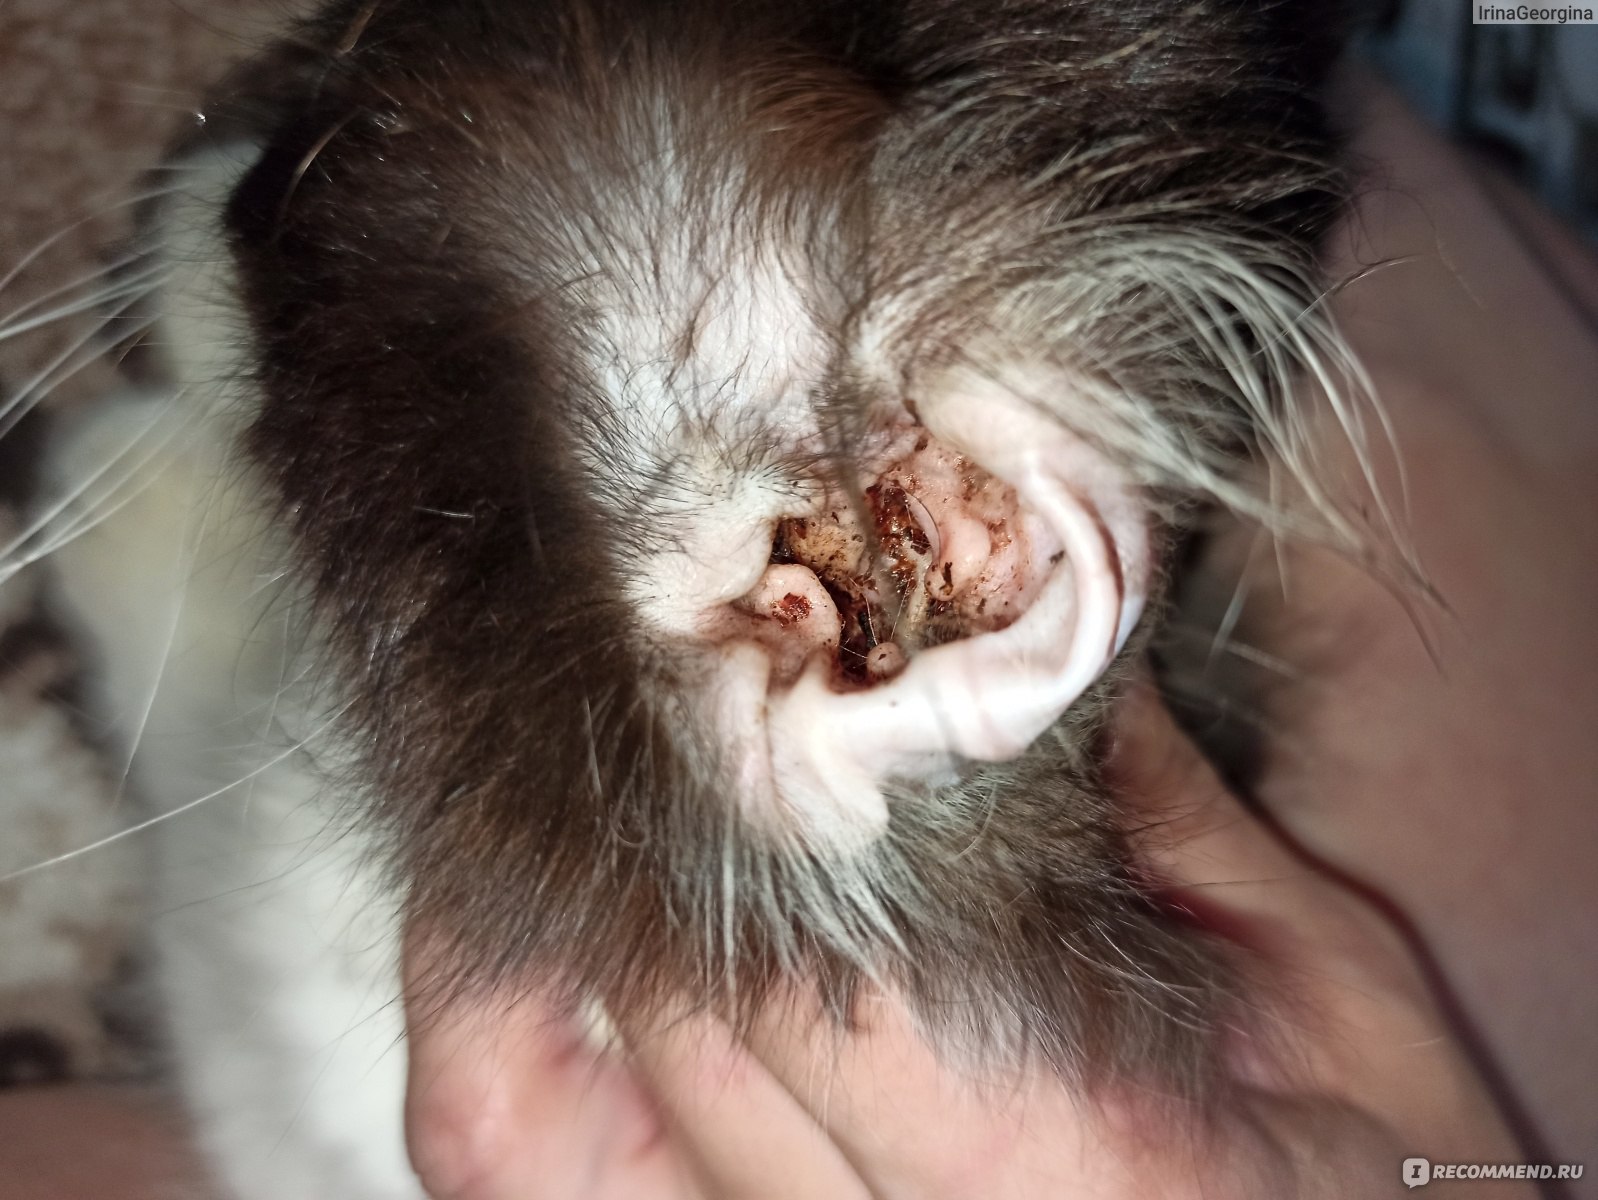 Как лечить ушного клеща у кота — советы ветеринара, препараты